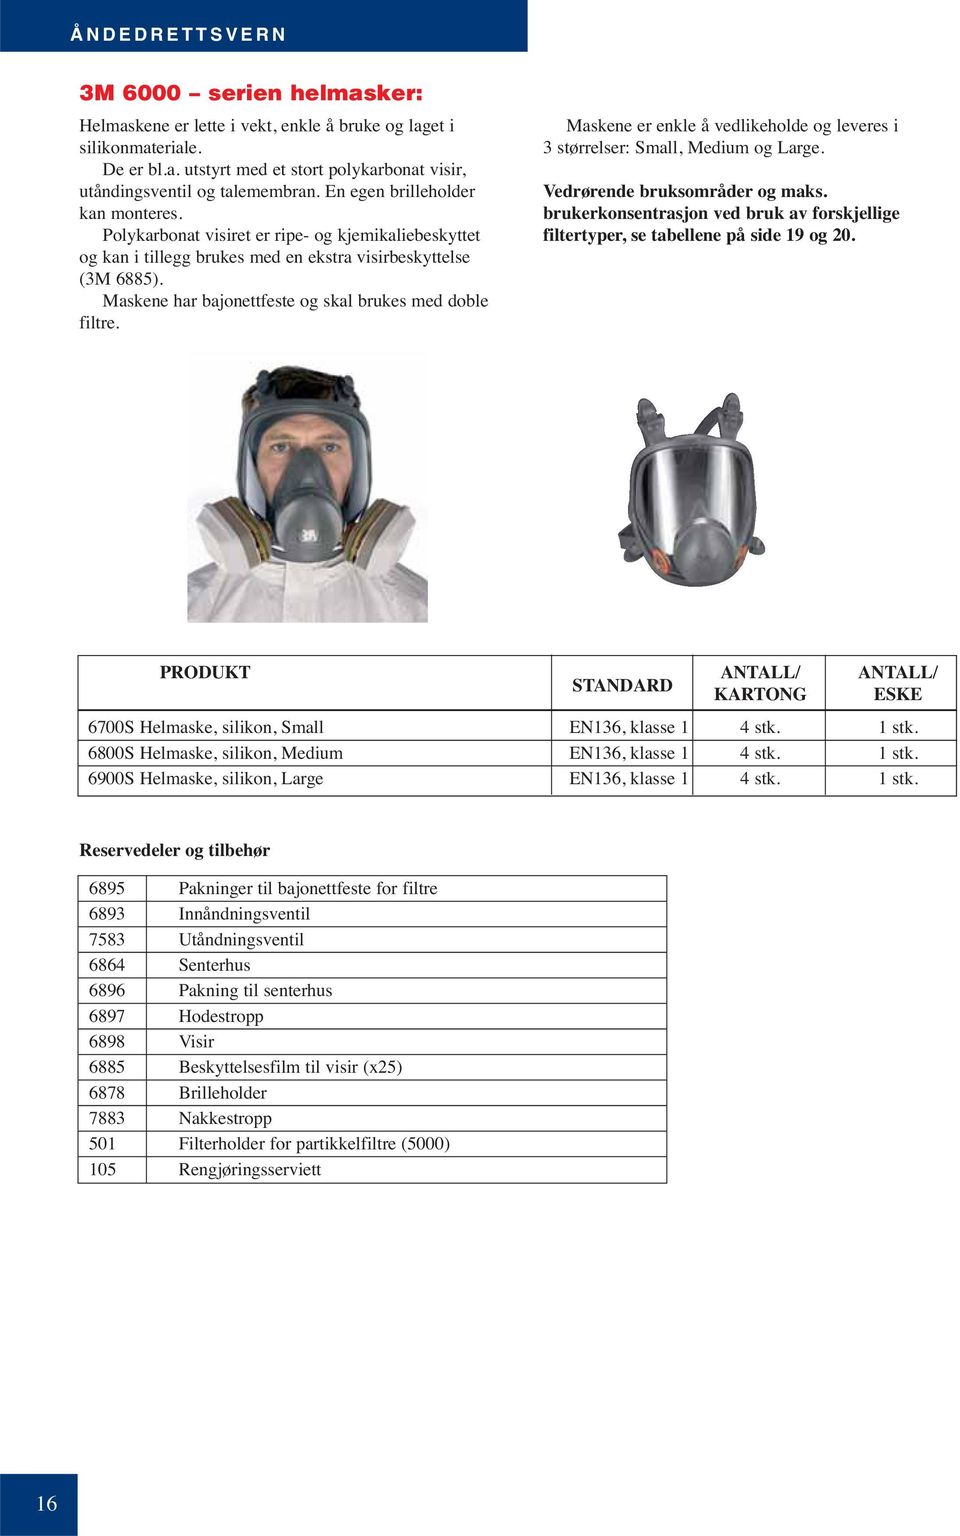 Maskene har bajonettfeste og skal brukes med doble filtre. Maskene er enkle å vedlikeholde og leveres i 3 størrelser: Small, Medium og Large. Vedrørende bruksområder og maks.